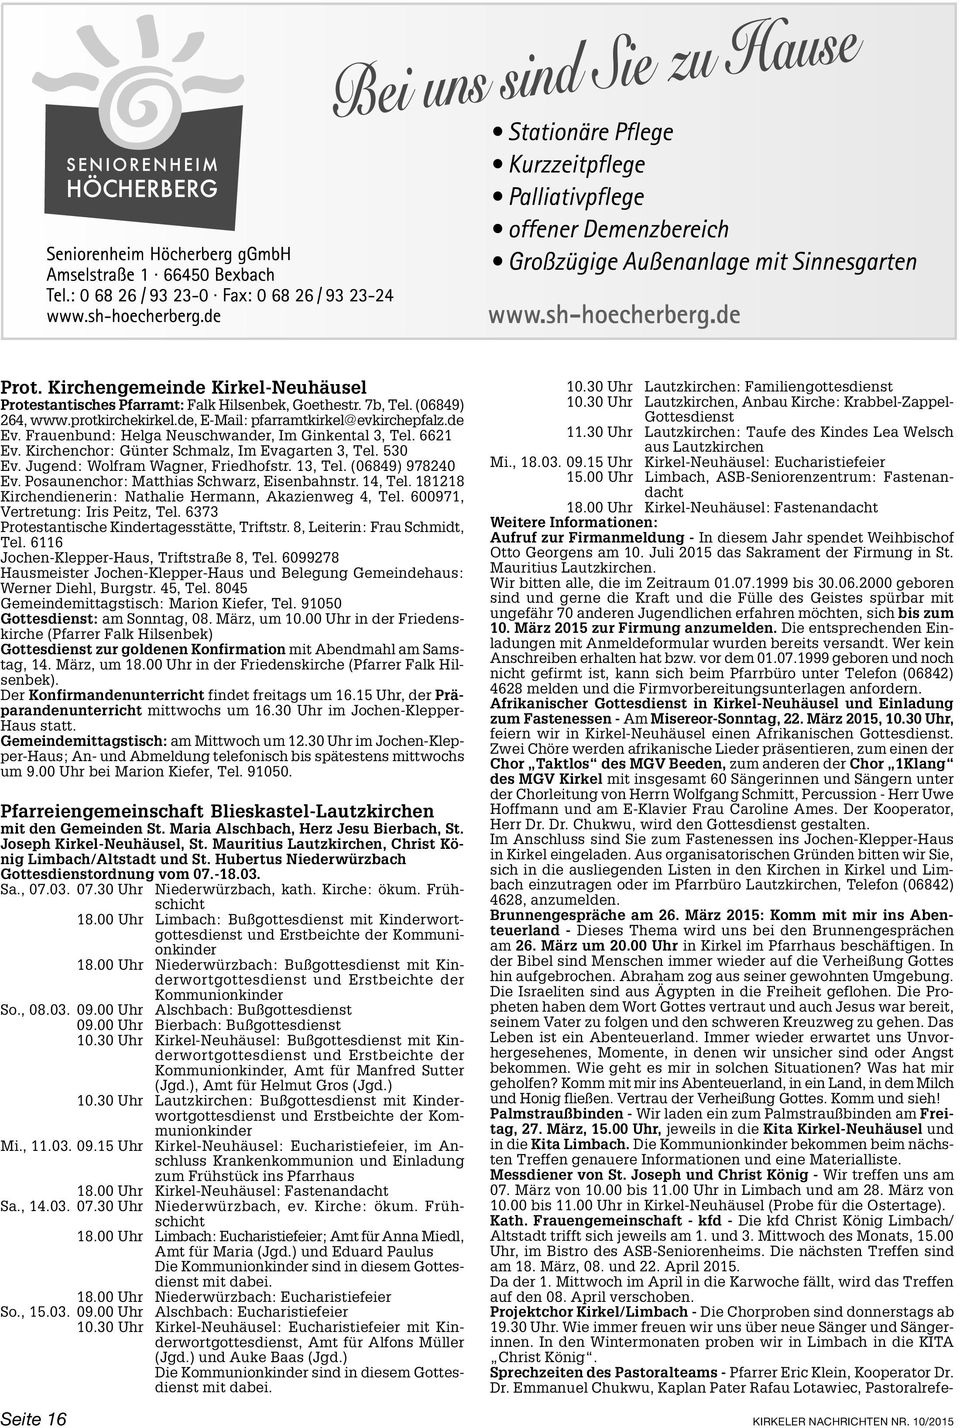 Posaunenchor: Matthias Schwarz, Eisenbahnstr. 14, Tel. 181218 Kirchendienerin: Nathalie Hermann, Akazienweg 4, Tel. 600971, Vertretung: Iris Peitz, Tel.